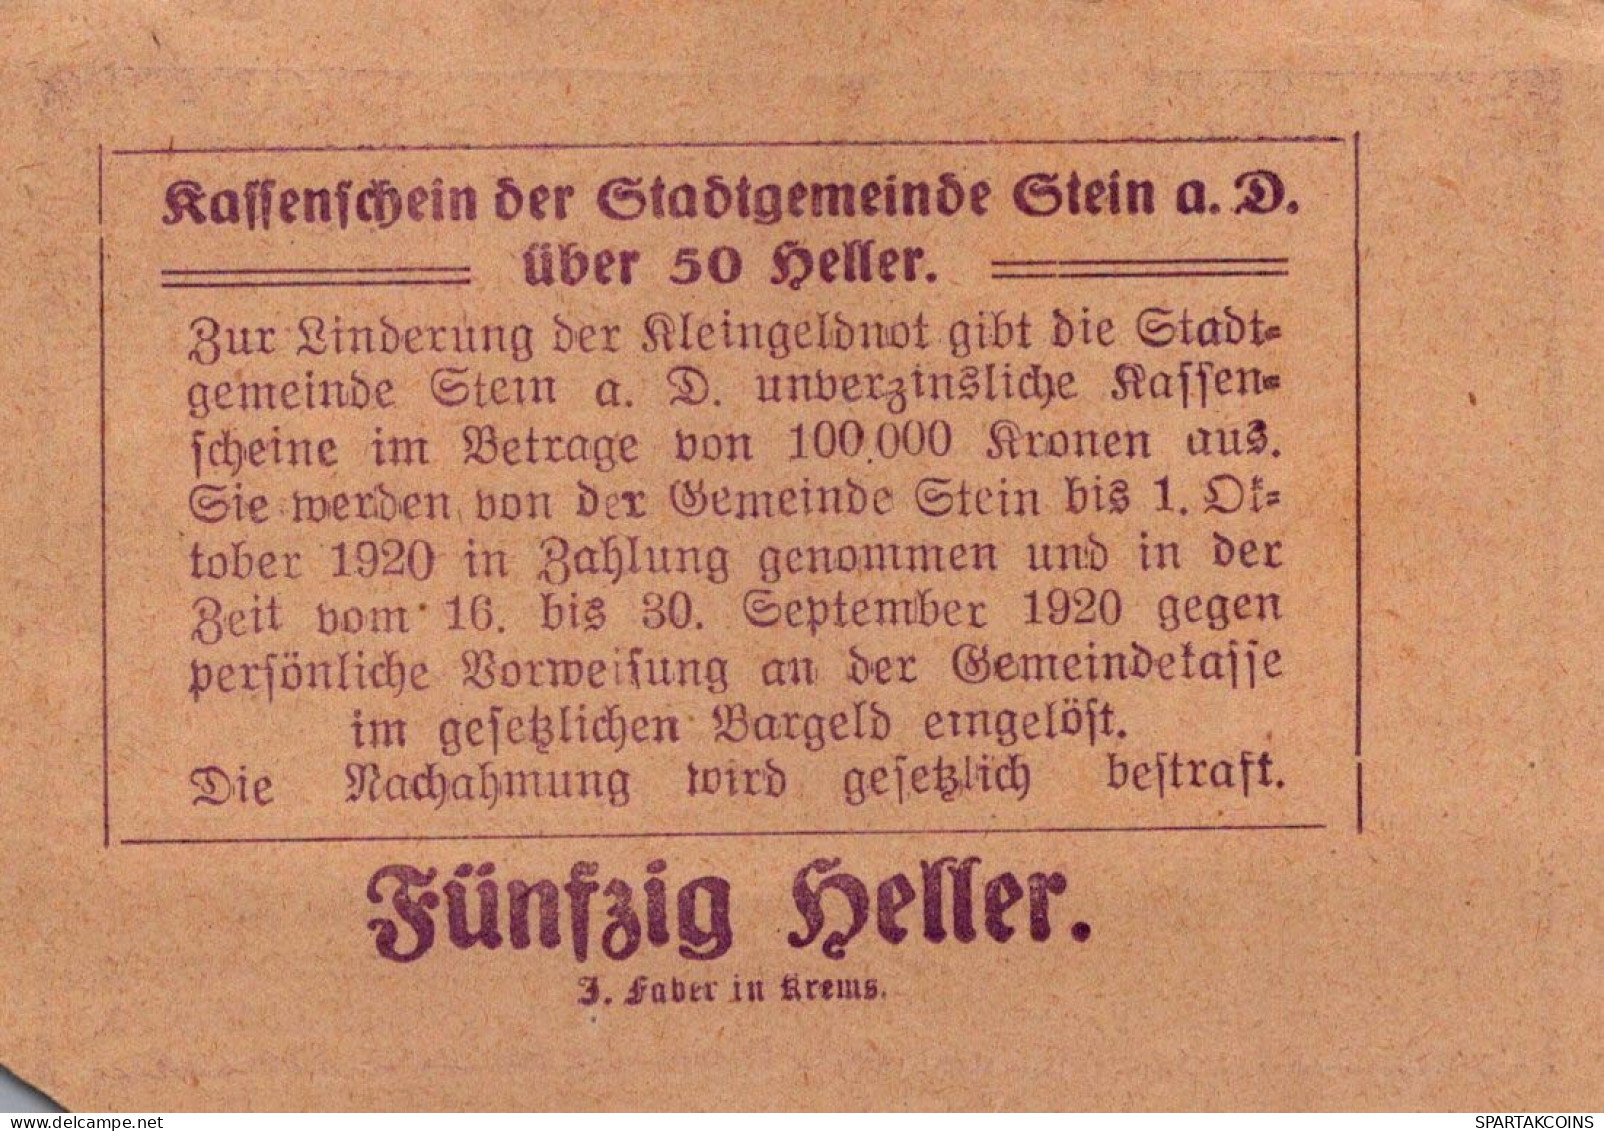 50 HELLER 1920 Stadt STEIN AN DER DONAU Niedrigeren Österreich Notgeld #PF058 - [11] Emissions Locales